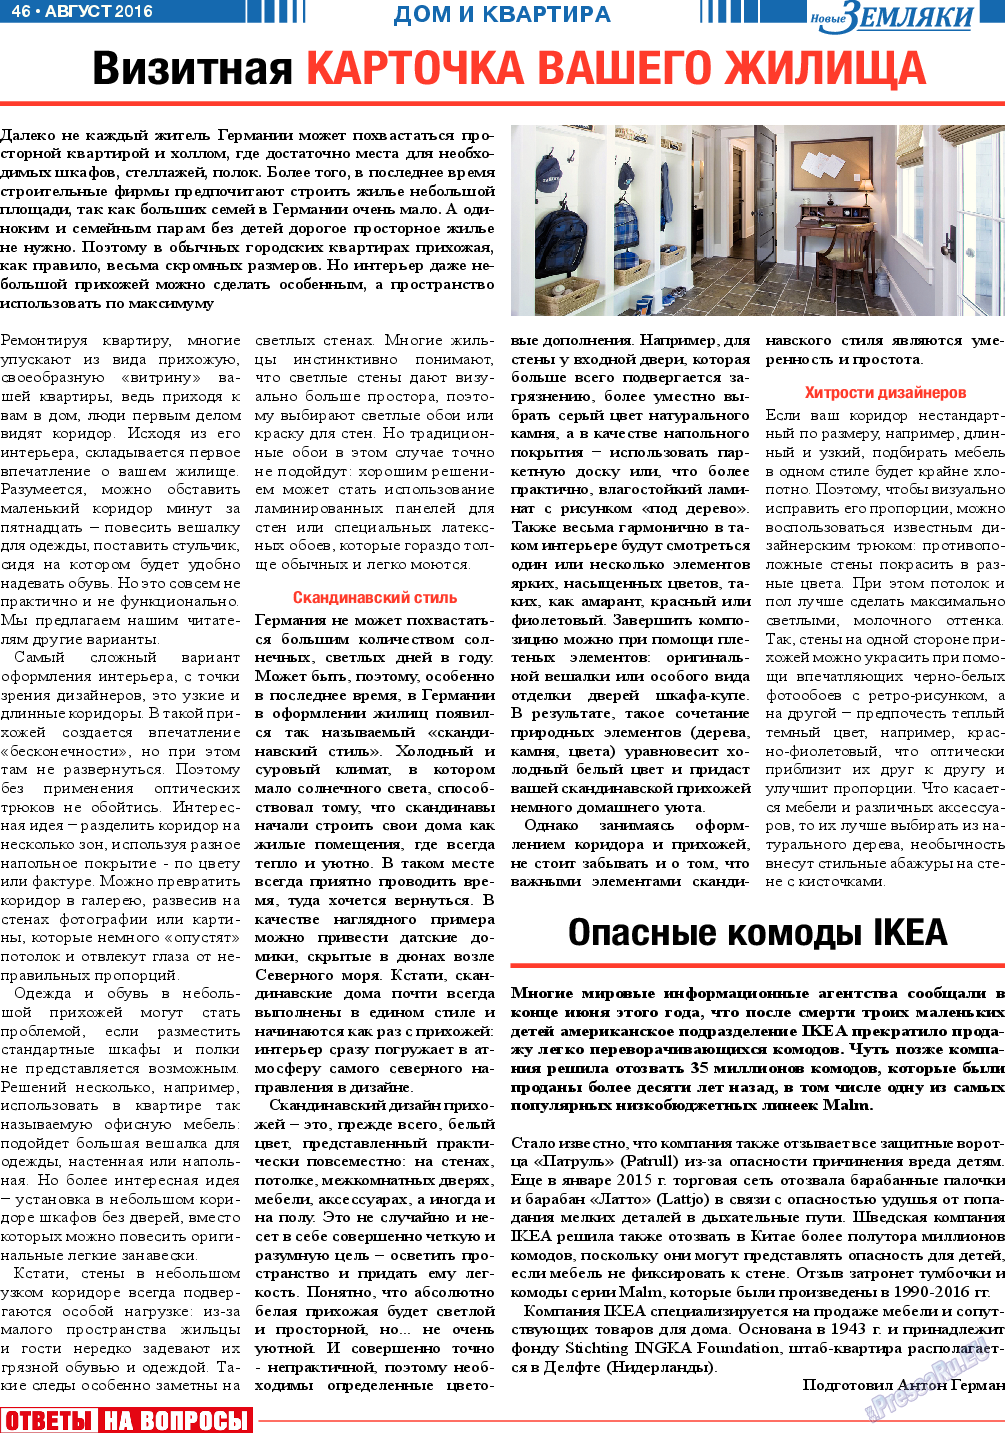 Новые Земляки, газета. 2016 №8 стр.46